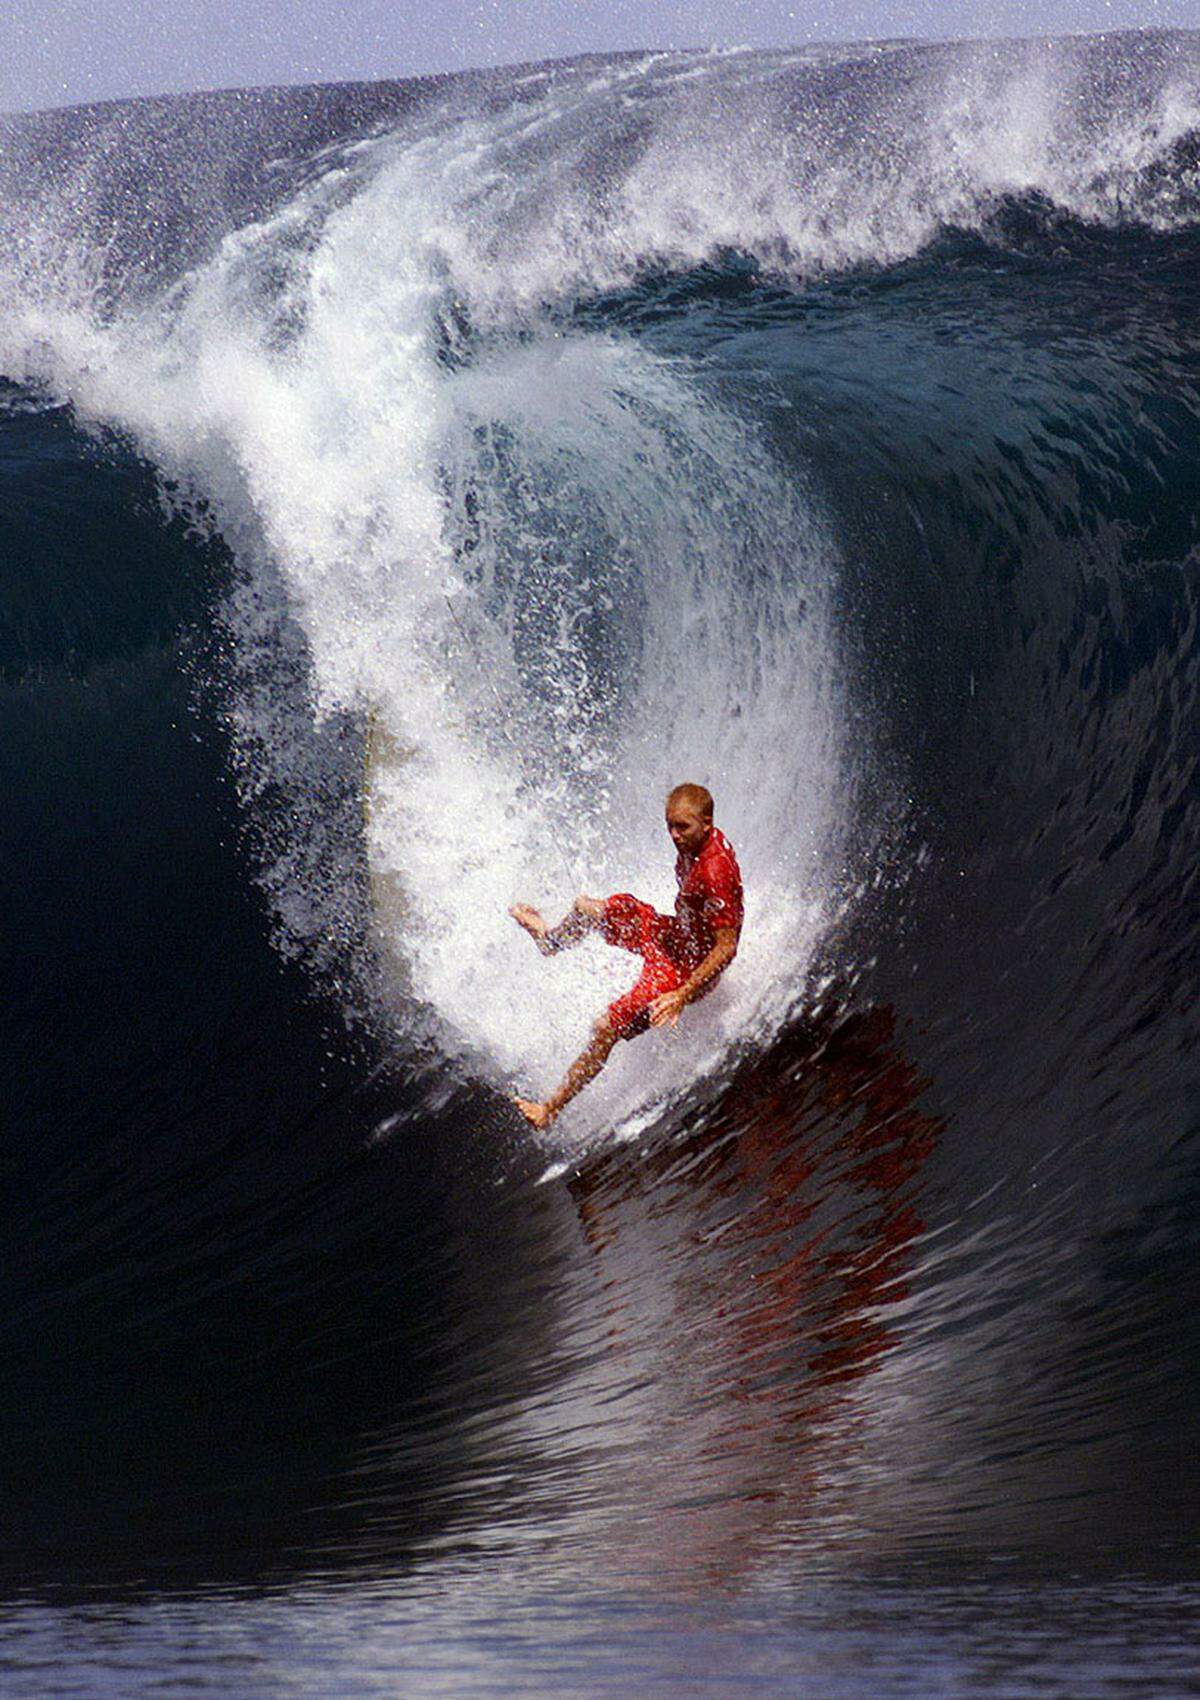 Der Surfspot ist für seine hohl brechenden Wellen bekannt, die drei bis sieben Meter hoch sein können. Die einzigartige Form der Wellen ist auf das flache Korallenriff zurückzuführen, das teilweise nur 50 Zentimeter unter dem Wasser liegt. Seit dem Jahr 2000 gab es fünf Todesfälle.